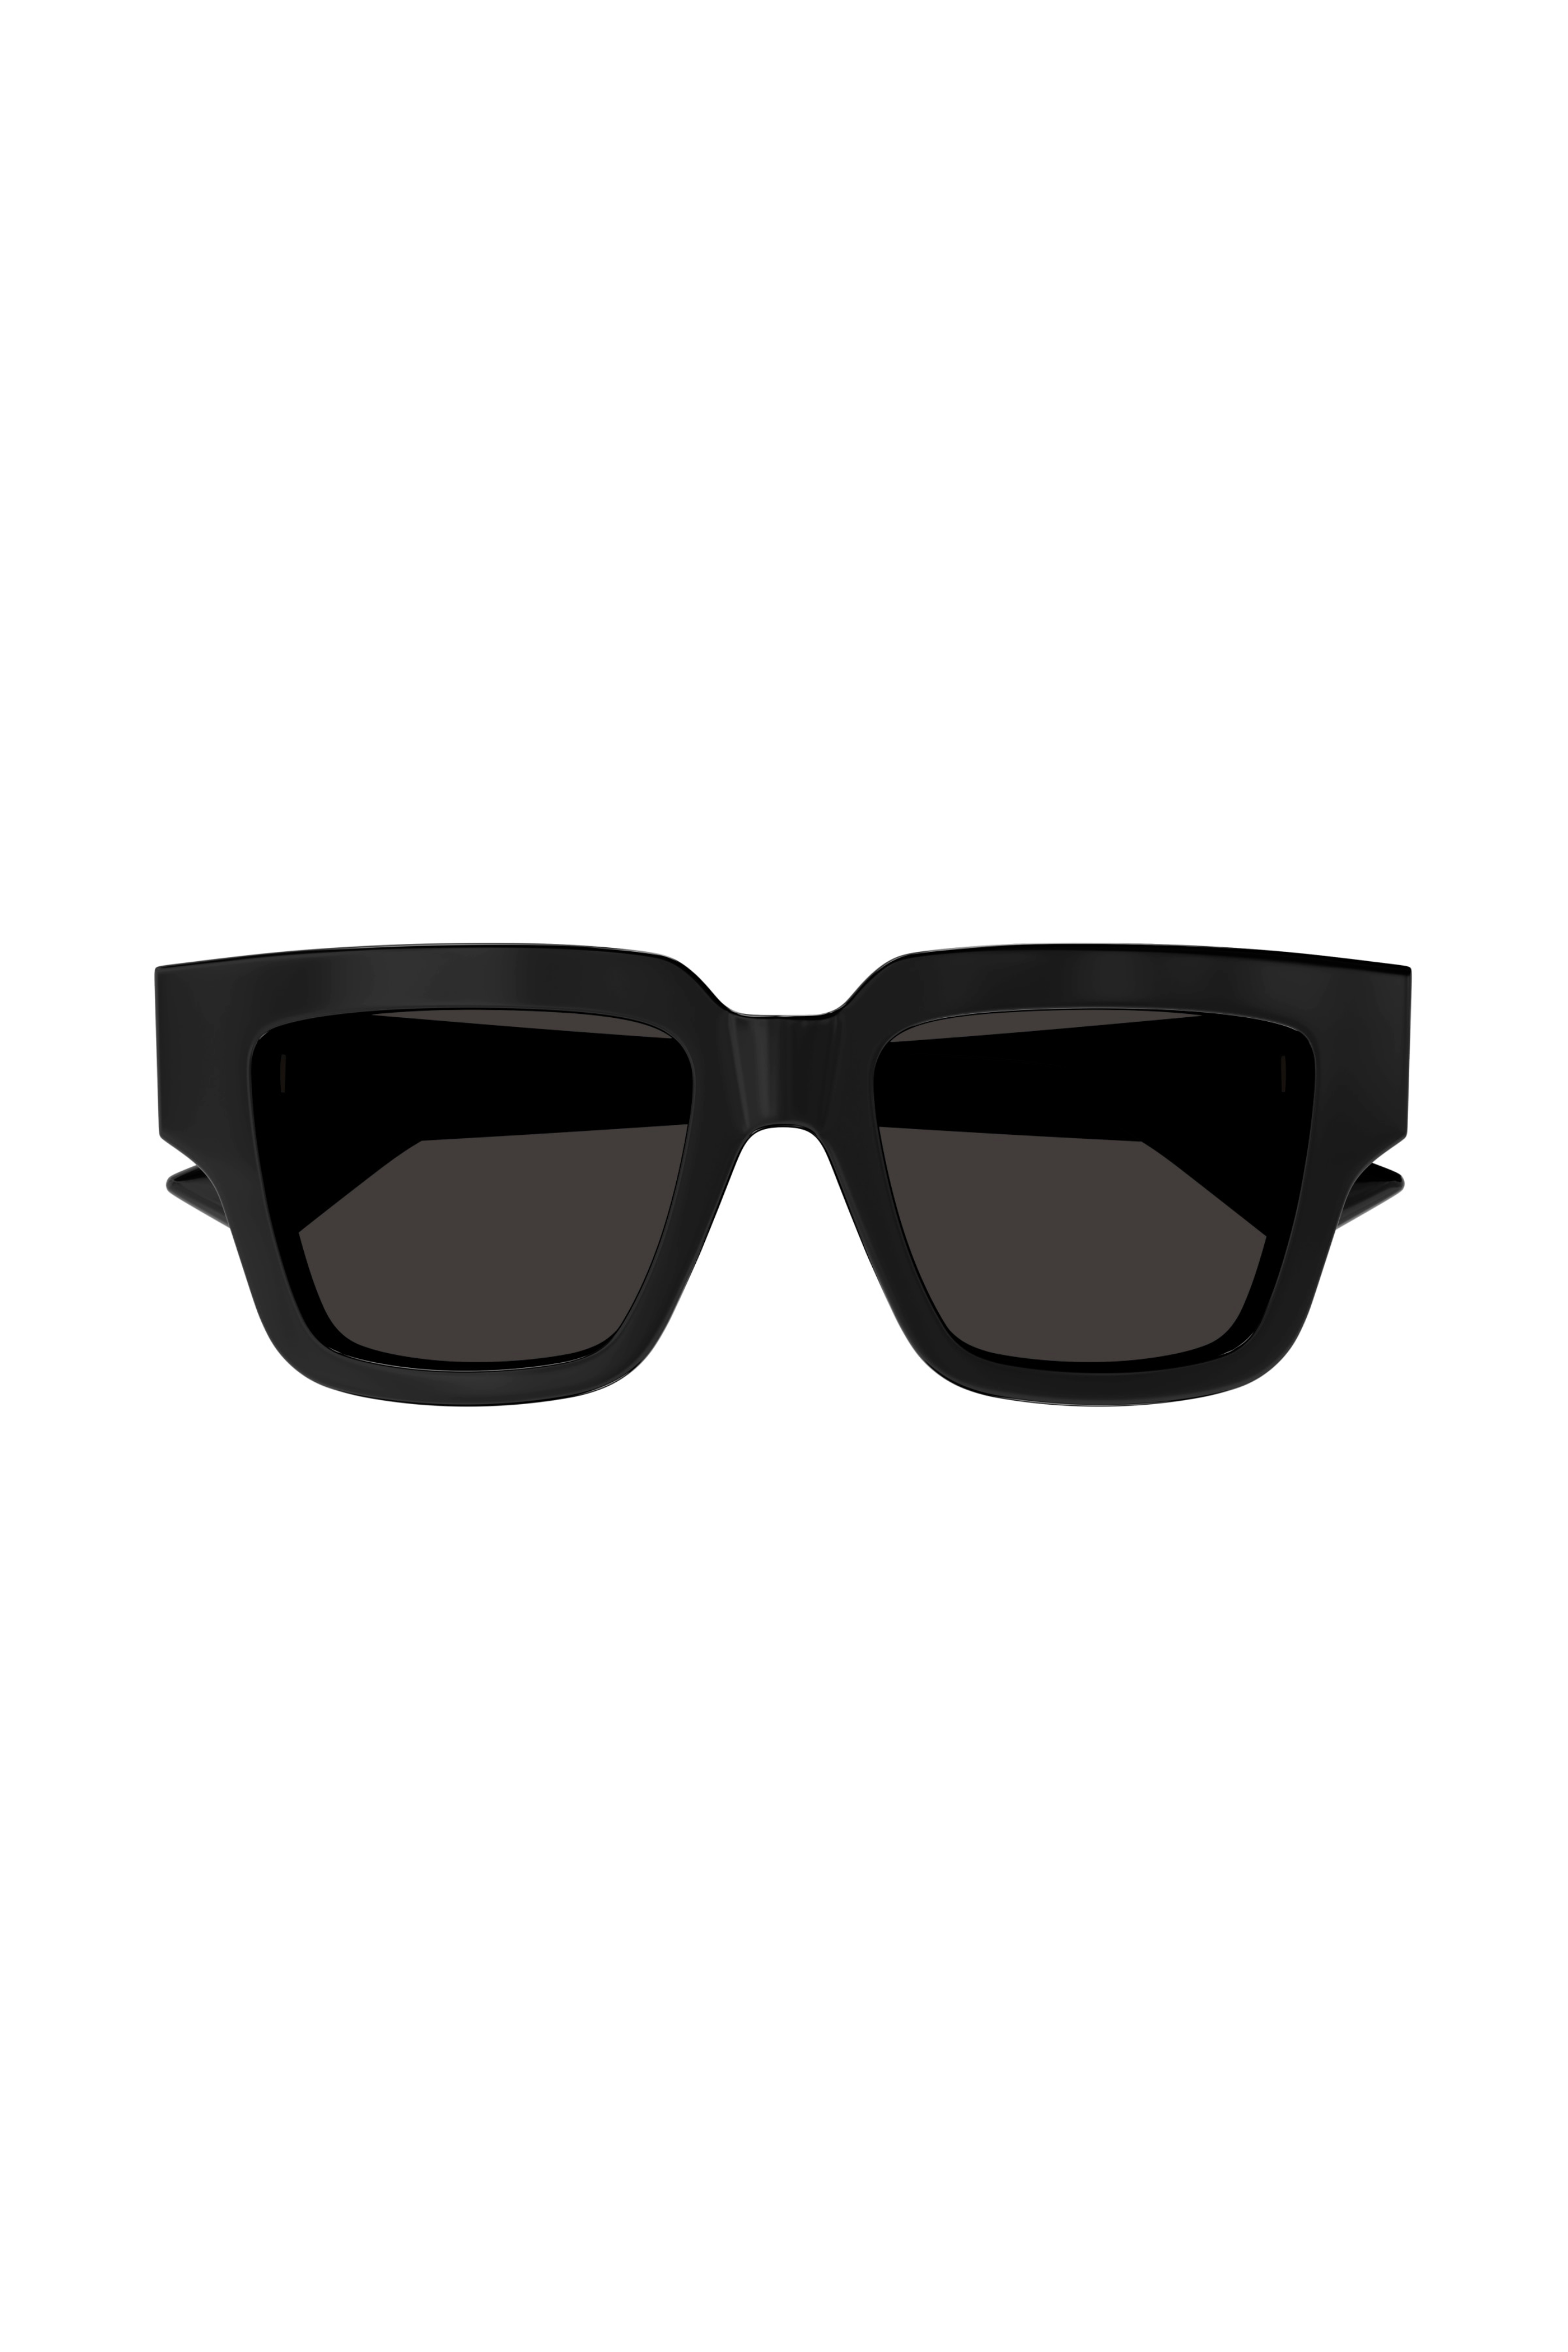 BOTTEGA VENETA Shiny Square Frame Sunglasses